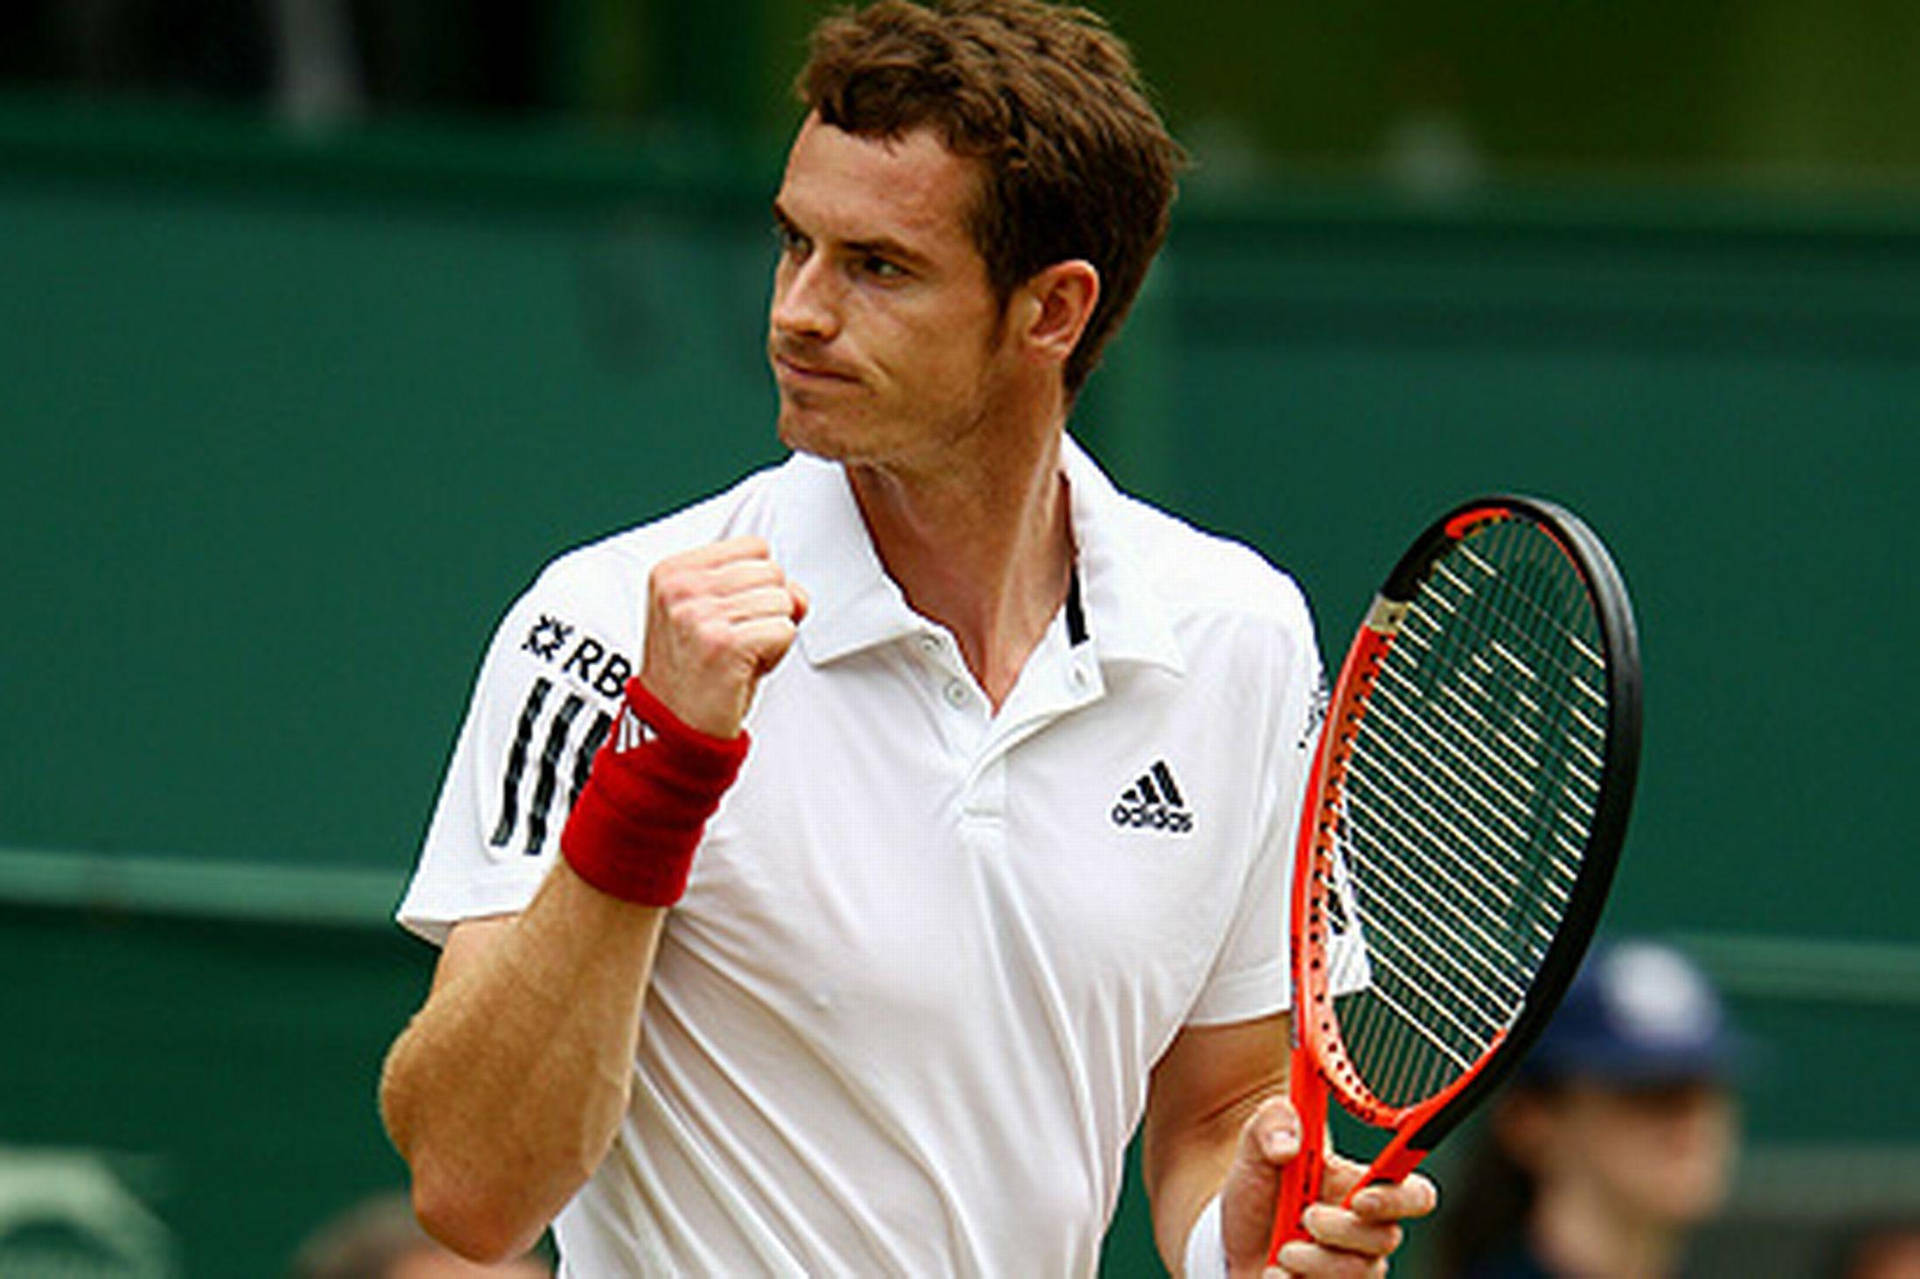 Ilprodigio Del Tennis Andy Murray In Un Tiro Feroce Sfondo